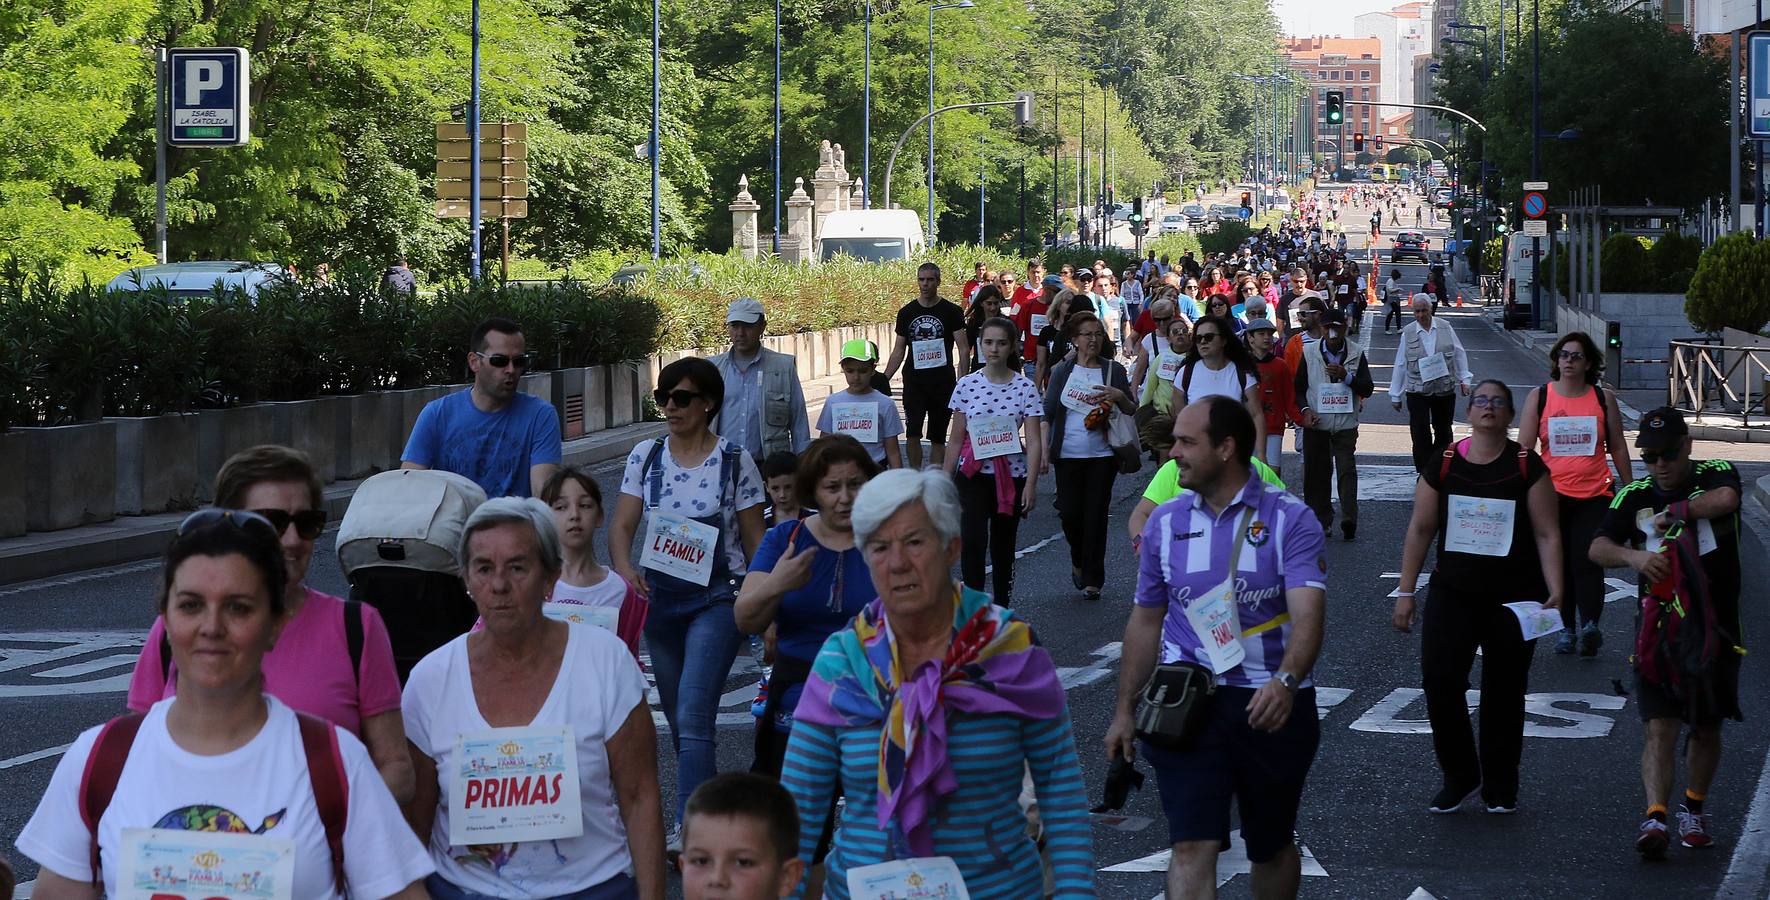 Más de 1.500 personas se han inscrito en esta marcha popular organizada de manera conjunta por El Norte de Castilla y por la Federación de Atletismo de Castilla y León con el espíritu de recorrer los algo más de cinco kilómetros del trazado por las calles más emblemáticas de la ciudad